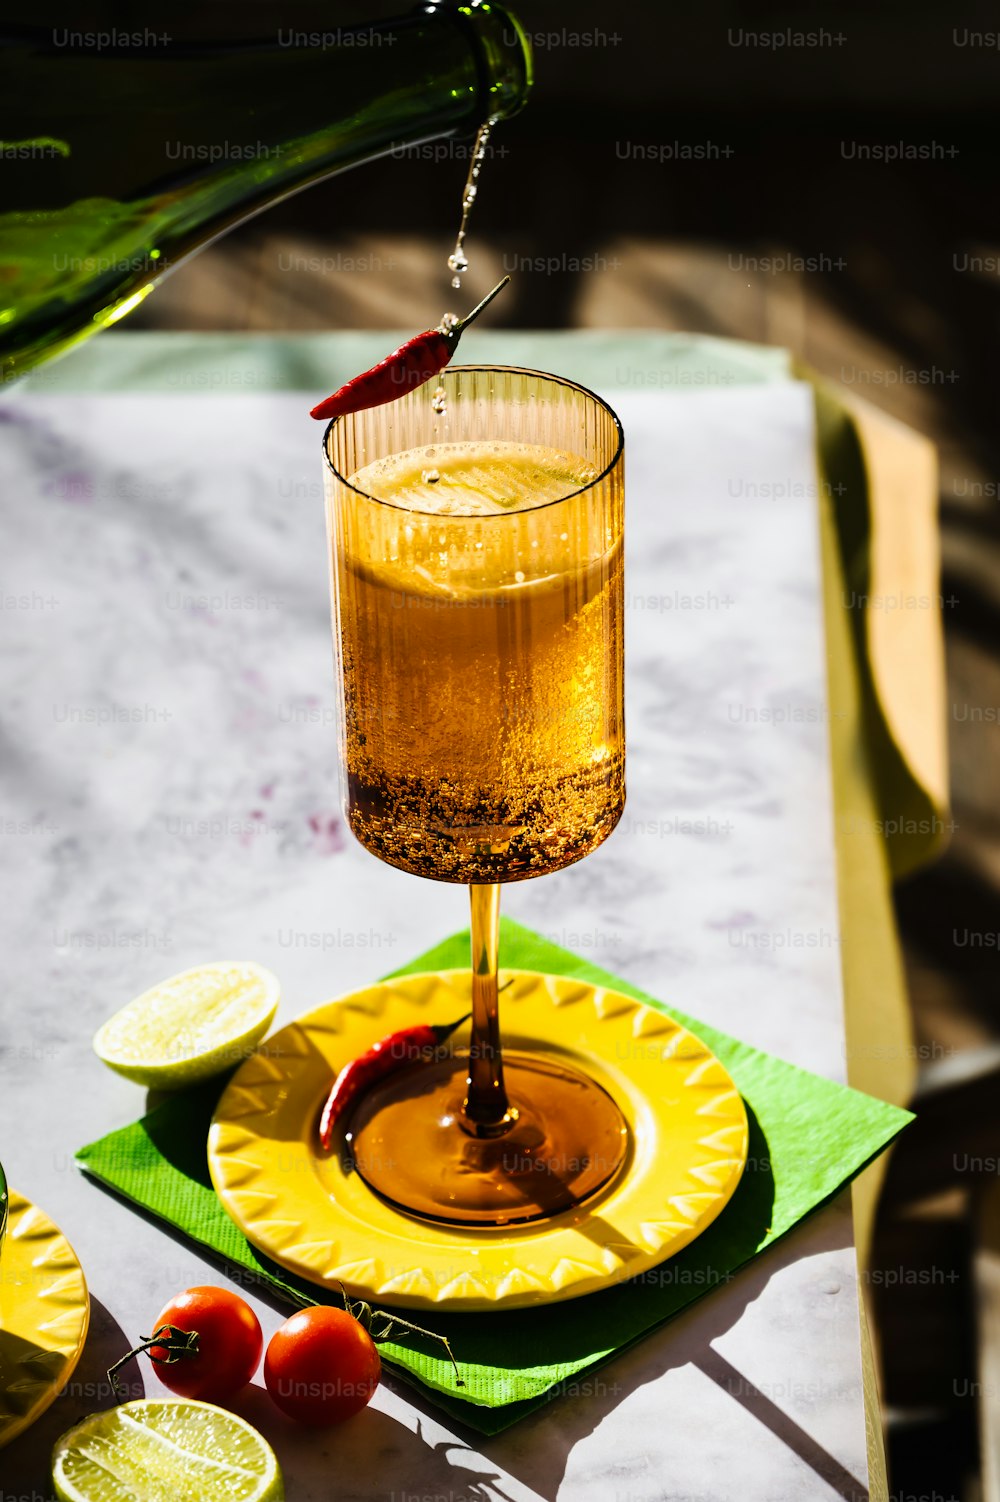 ein Getränk, das auf einem gelben Teller in ein Glas gegossen wird